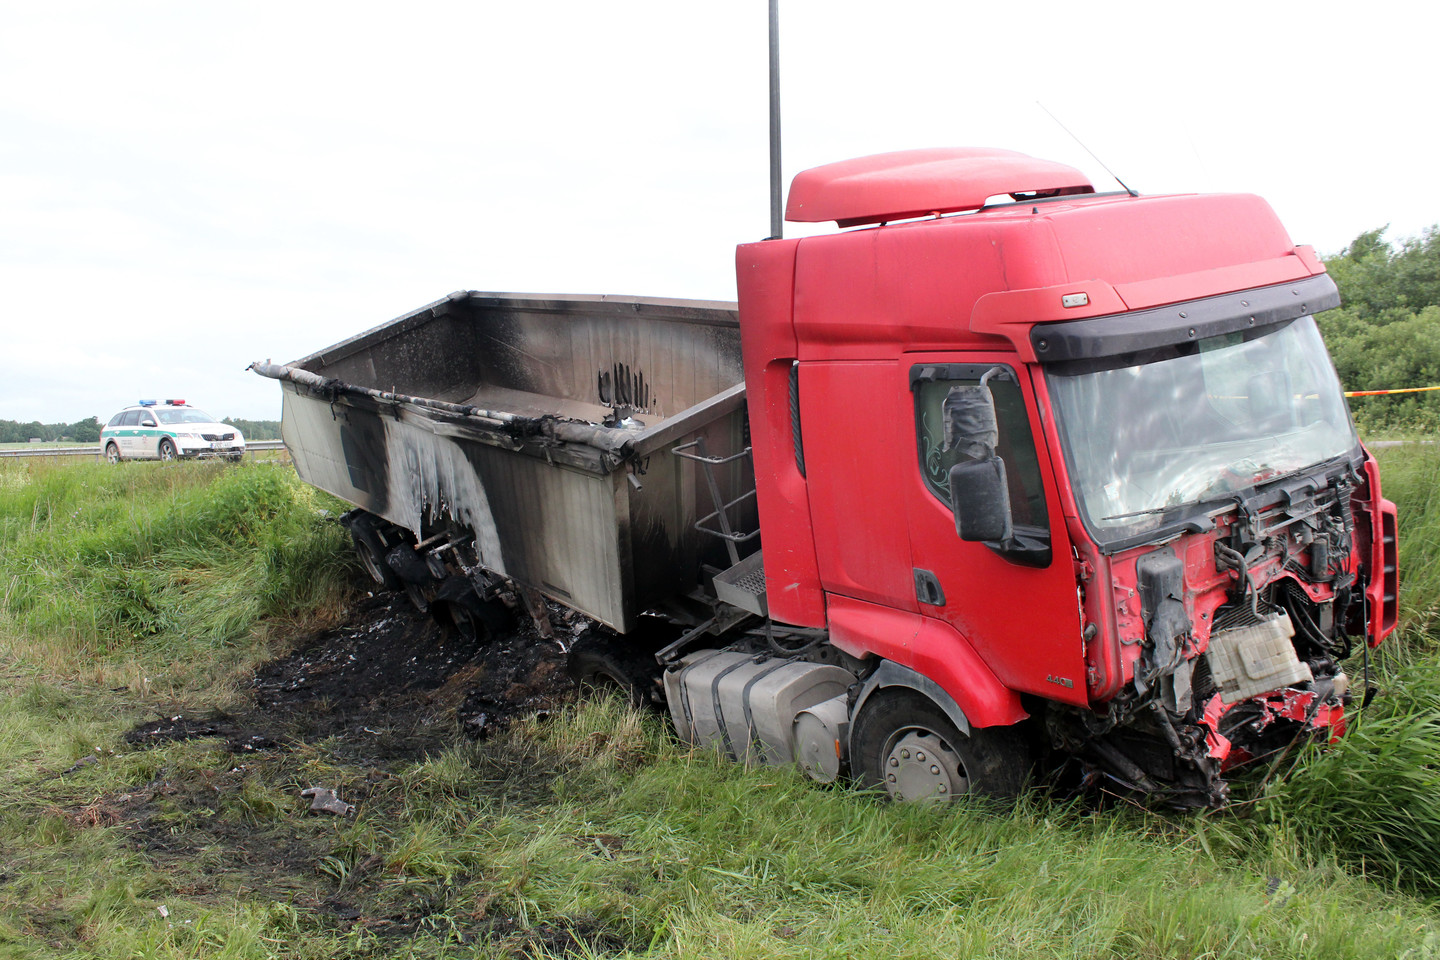 Šiurpiausia praėjusios savaitės avarija: po susidūrimo su sunkvežimiu „Renault Mégane“ užsiliepsnojo, o vairuotojas sudegė automobilyje.<br>R. Vitkaus nuotr.